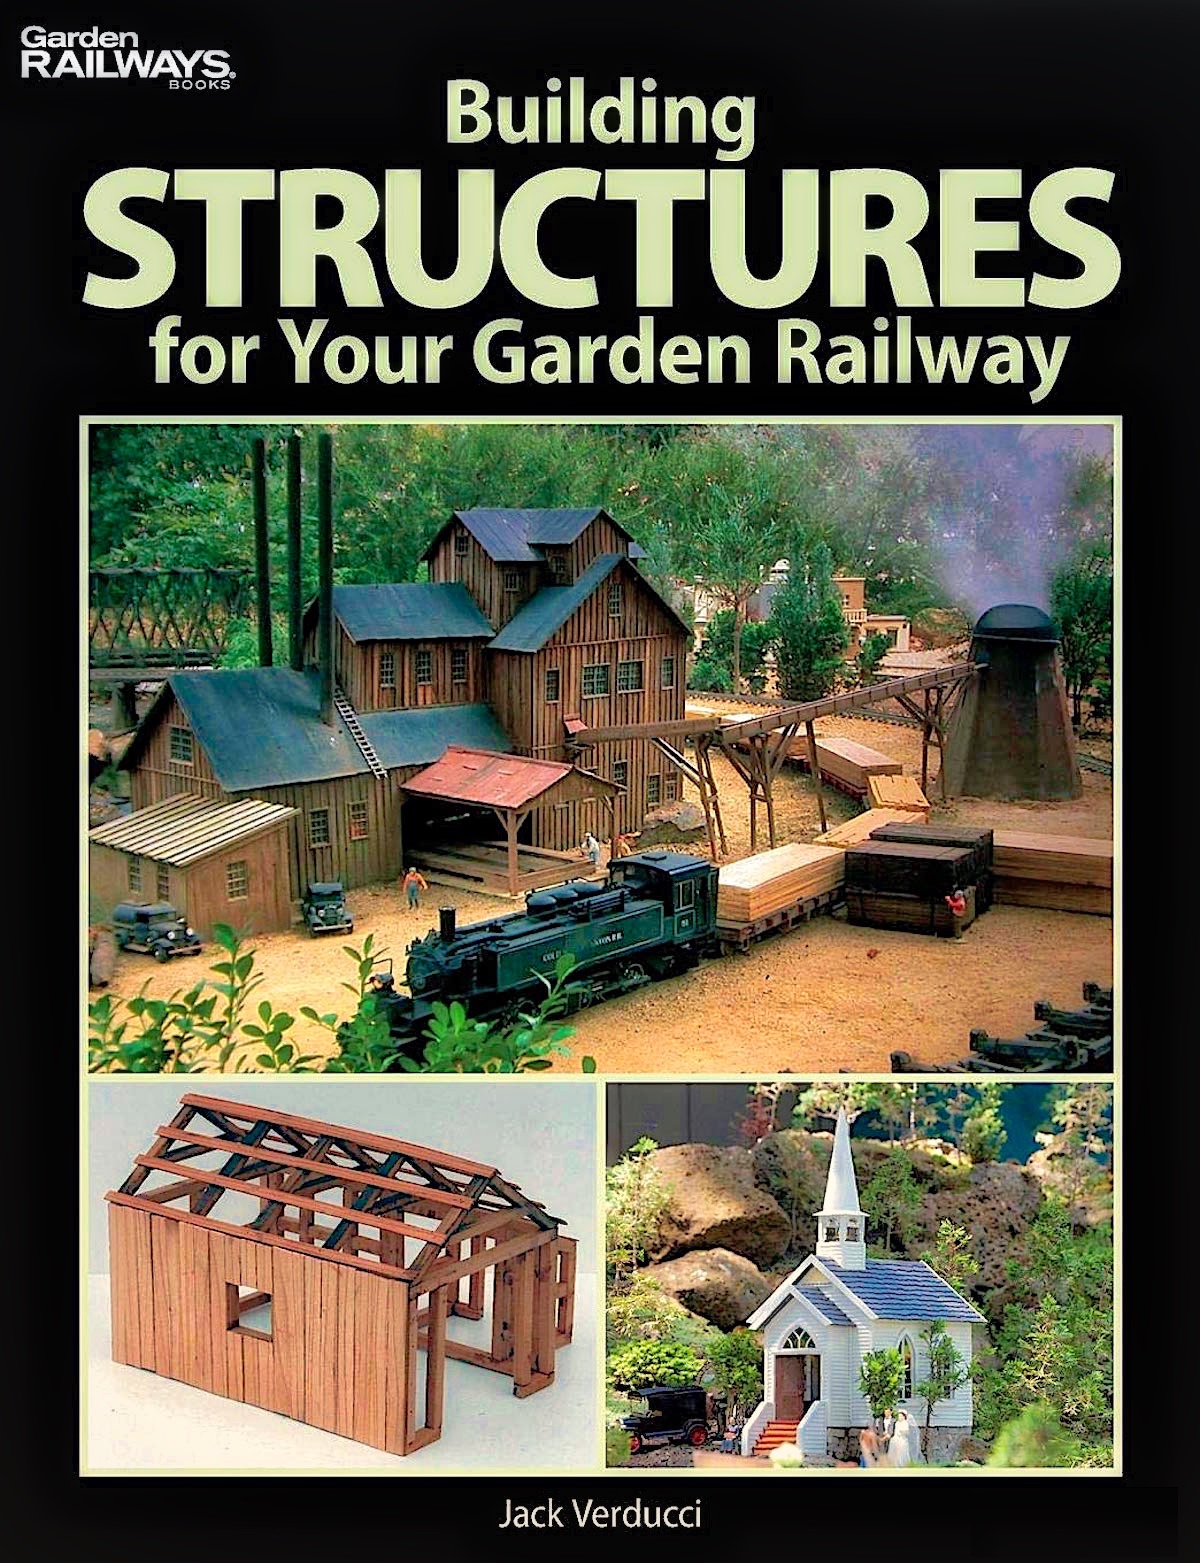 Gartenbahn (Large Scale) Handbook - 2010 Building Structures for Your Garden Railway